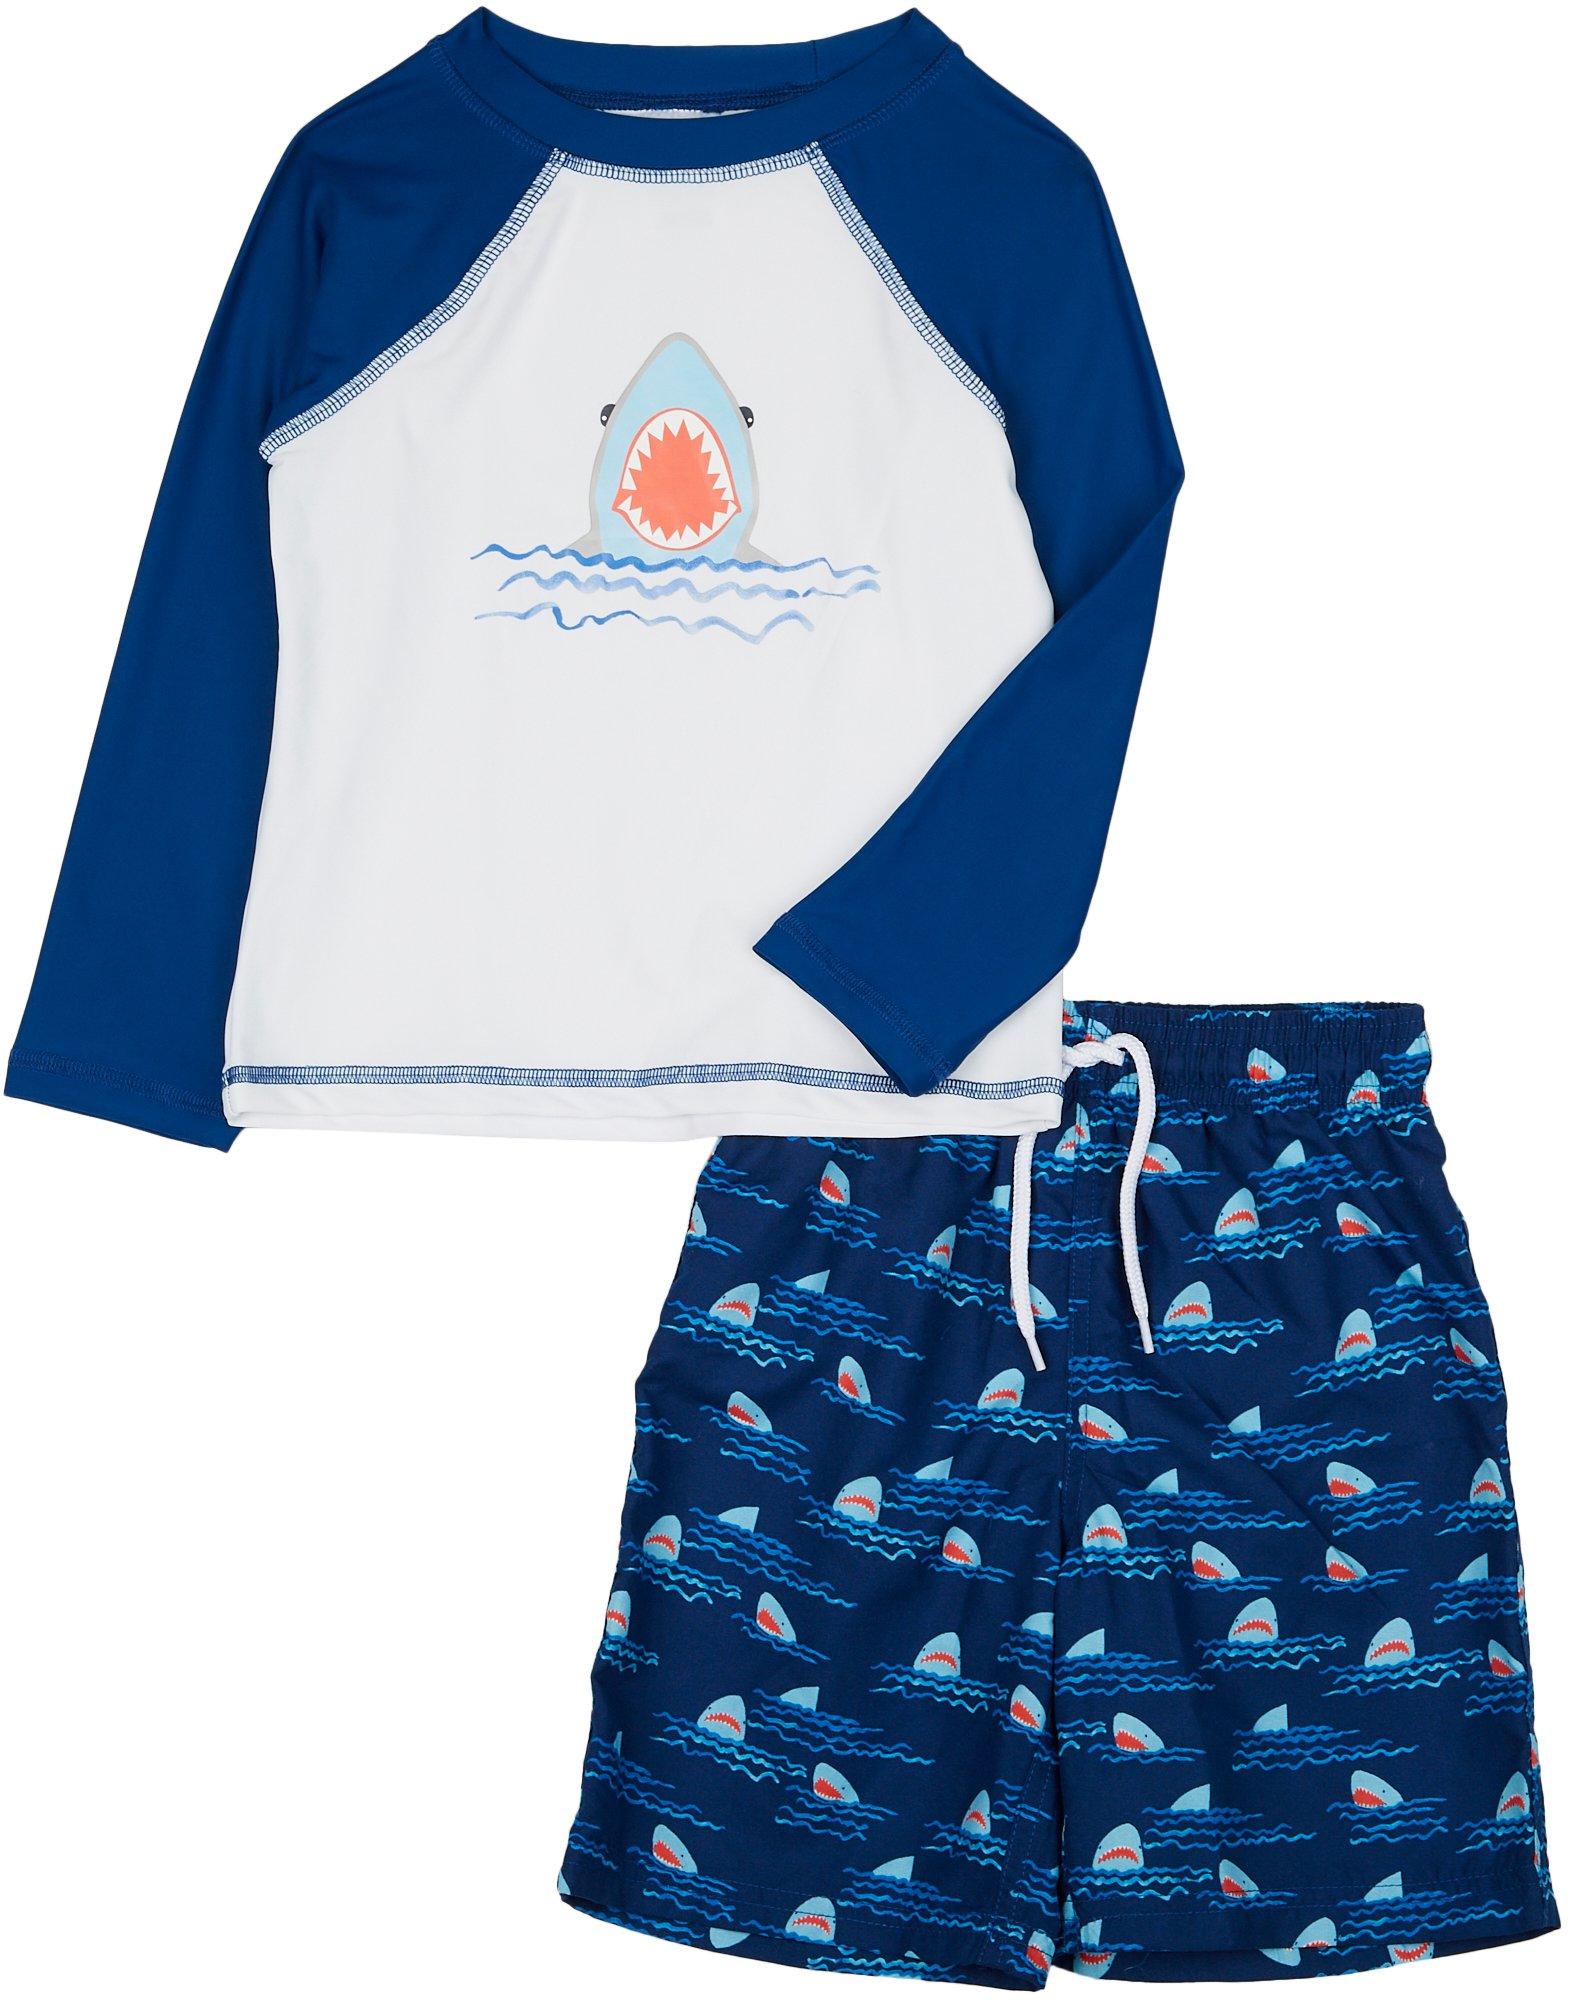 Floatimini Little Boys 2-pc. Shark Rashguard Swimsuit Set